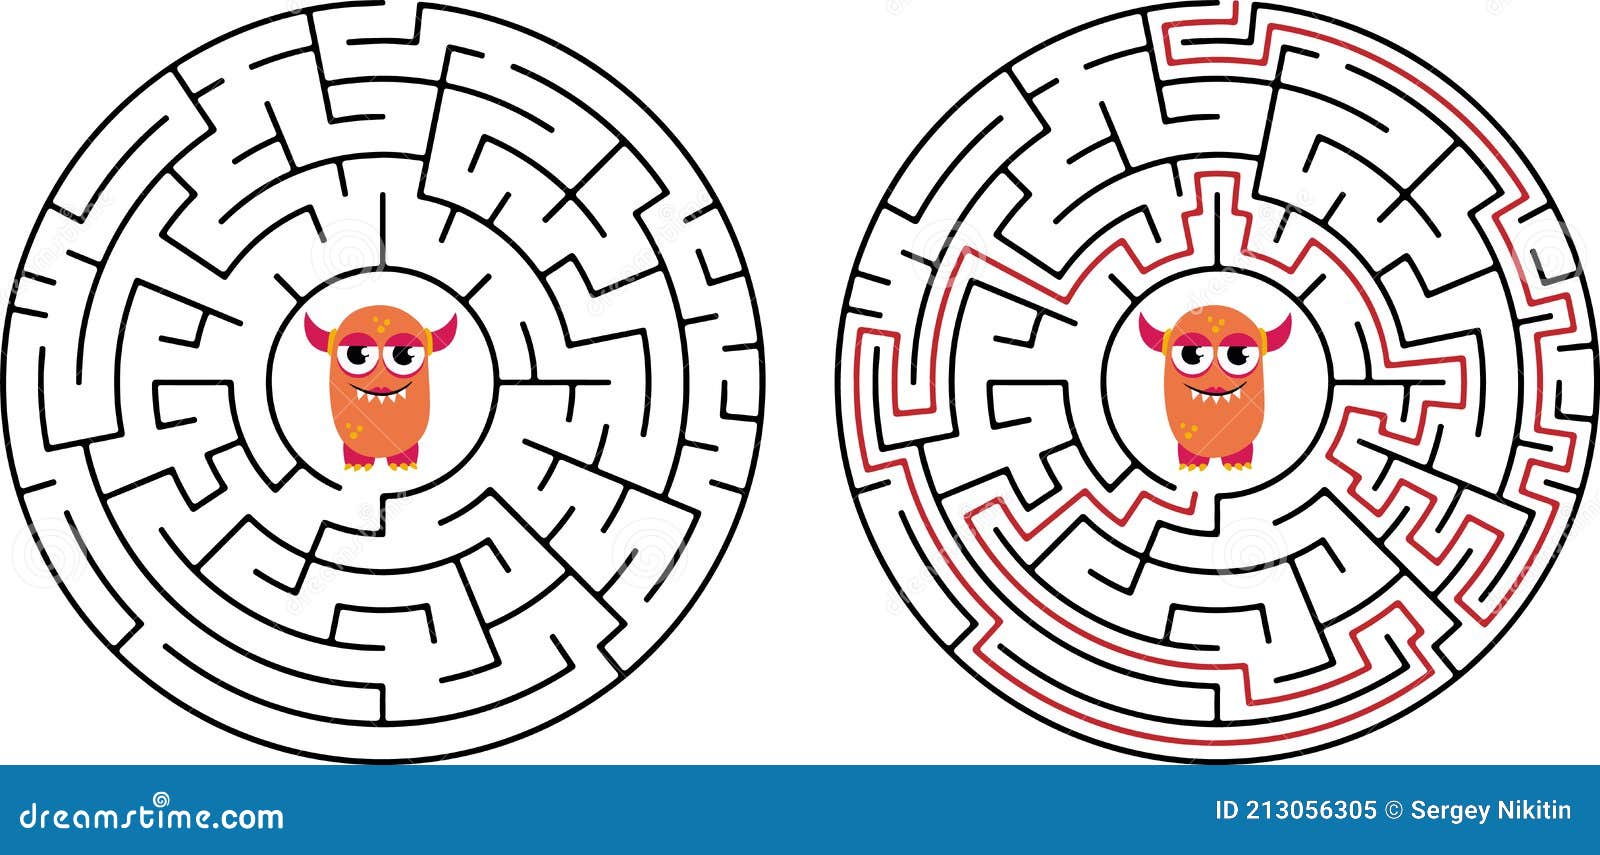 Labirinto De Jogos De Lógica Educacional Para Crianças. Encontrar O Caminho  Certo. Linha Preta De Labirinto Simples Isolada, Em Fu Ilustração Stock -  Ilustração de isolado, fundo: 215509839